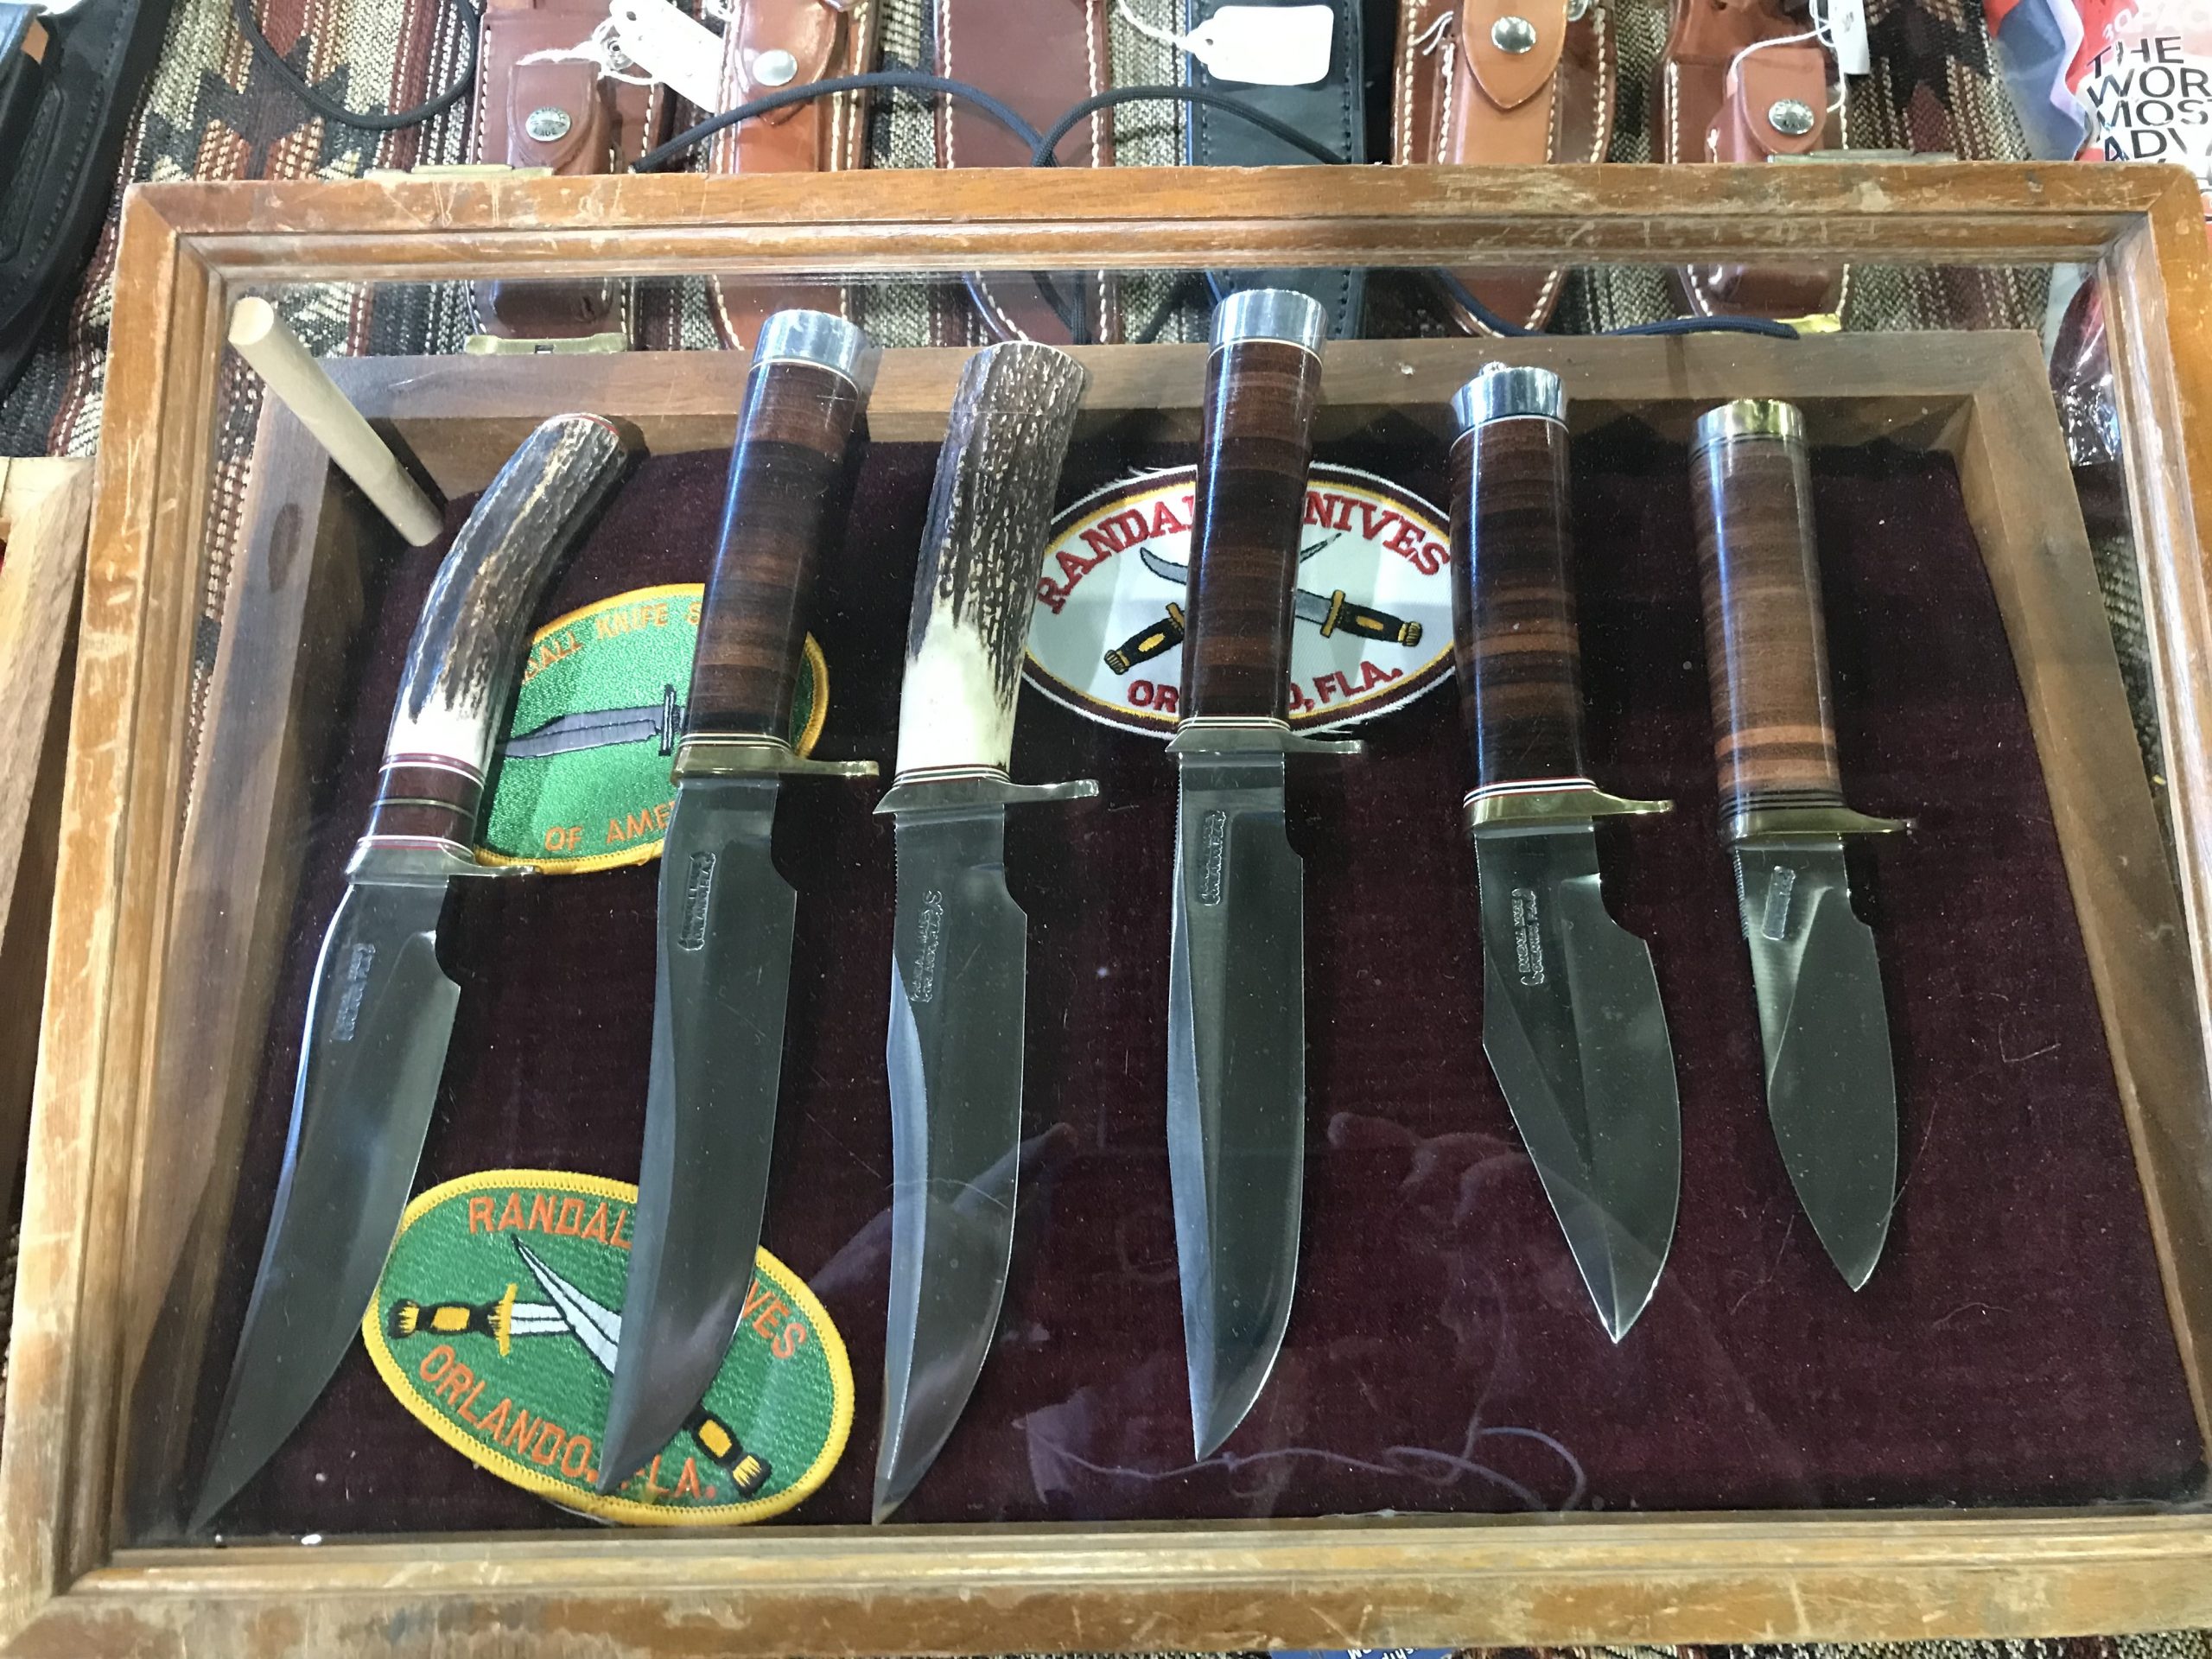  genuine Randall knives at the Tulsa gun show 